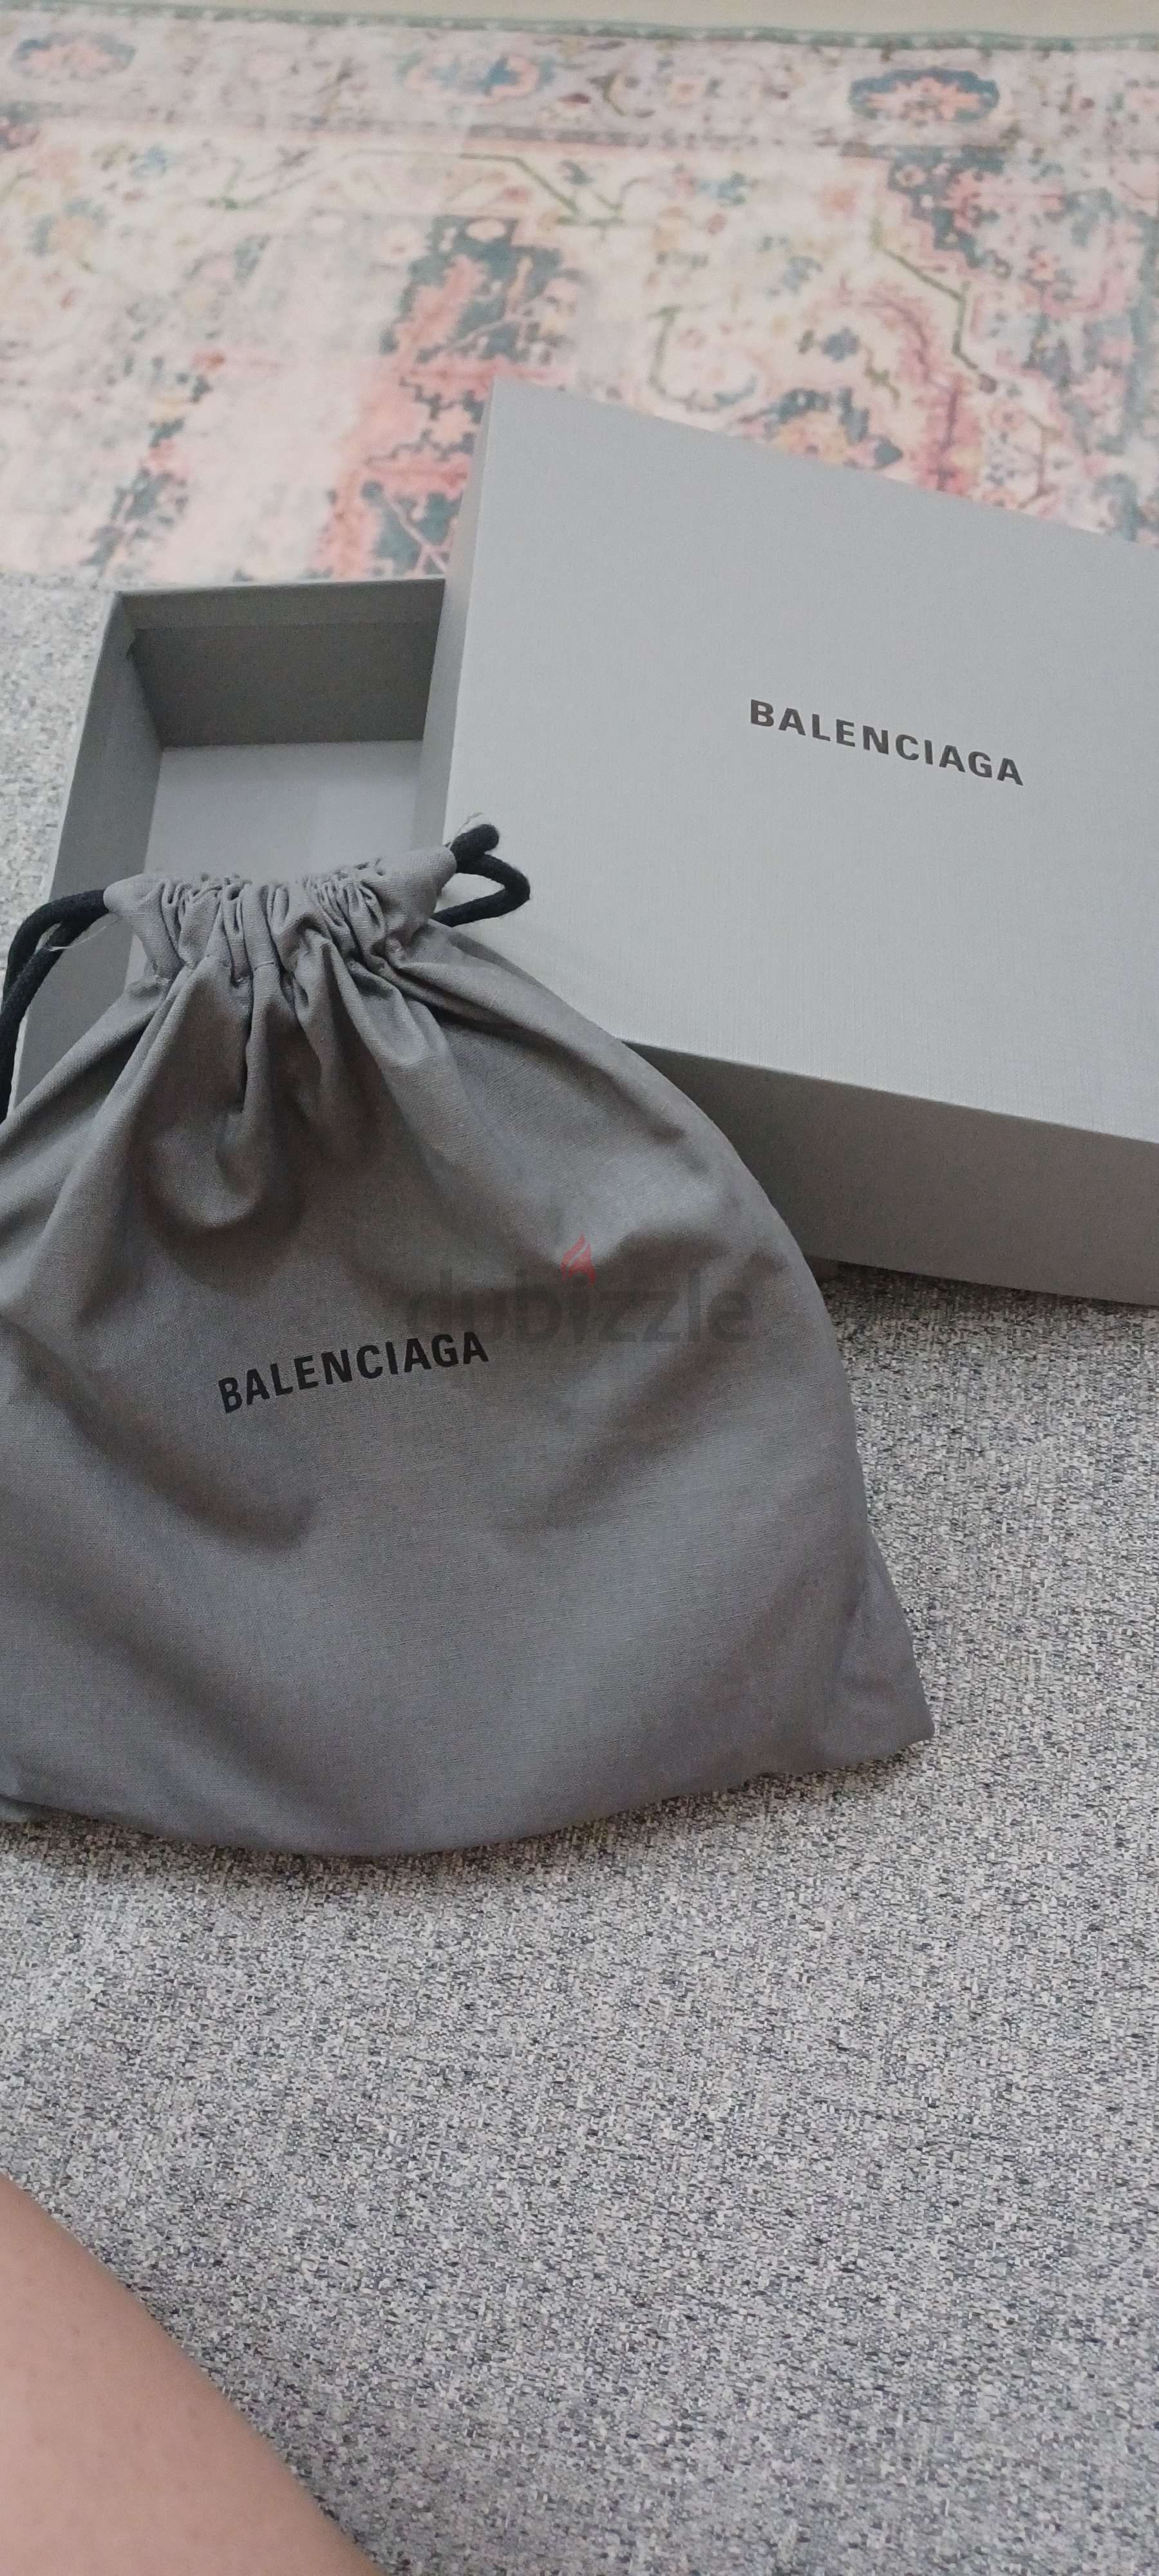 Balenciaga  Bags  Balenciaga Authentic Empty Gift Shoe Box Dustbag  Receipt Holder Tissue Paper  Poshmark